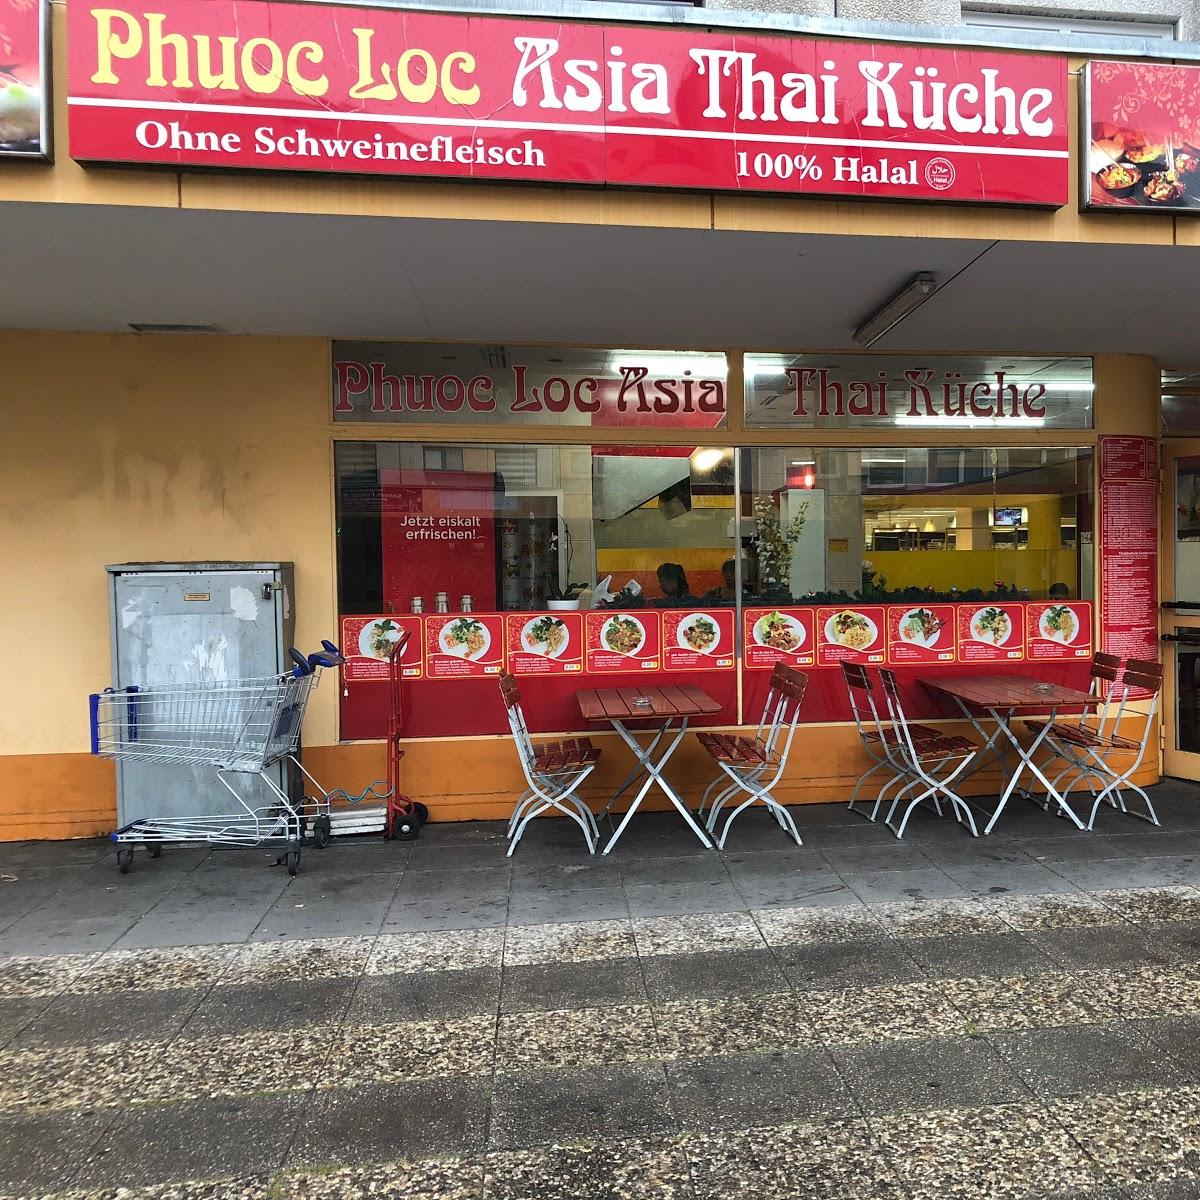 Restaurant "Phuoc Loc - Asia Thai Küche" in Berlin